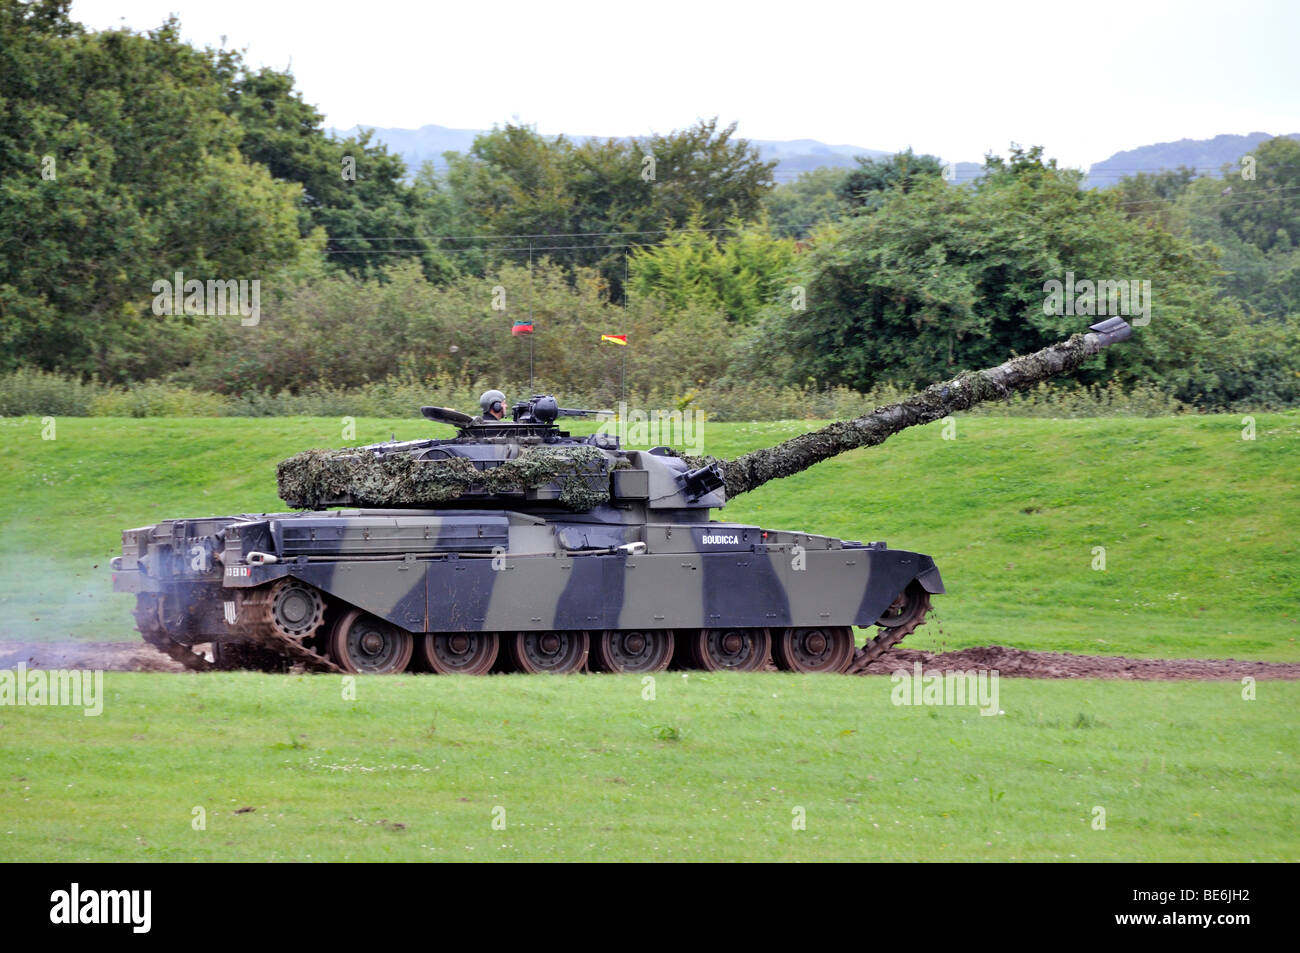 Chieftain British military tank. Stock Photo